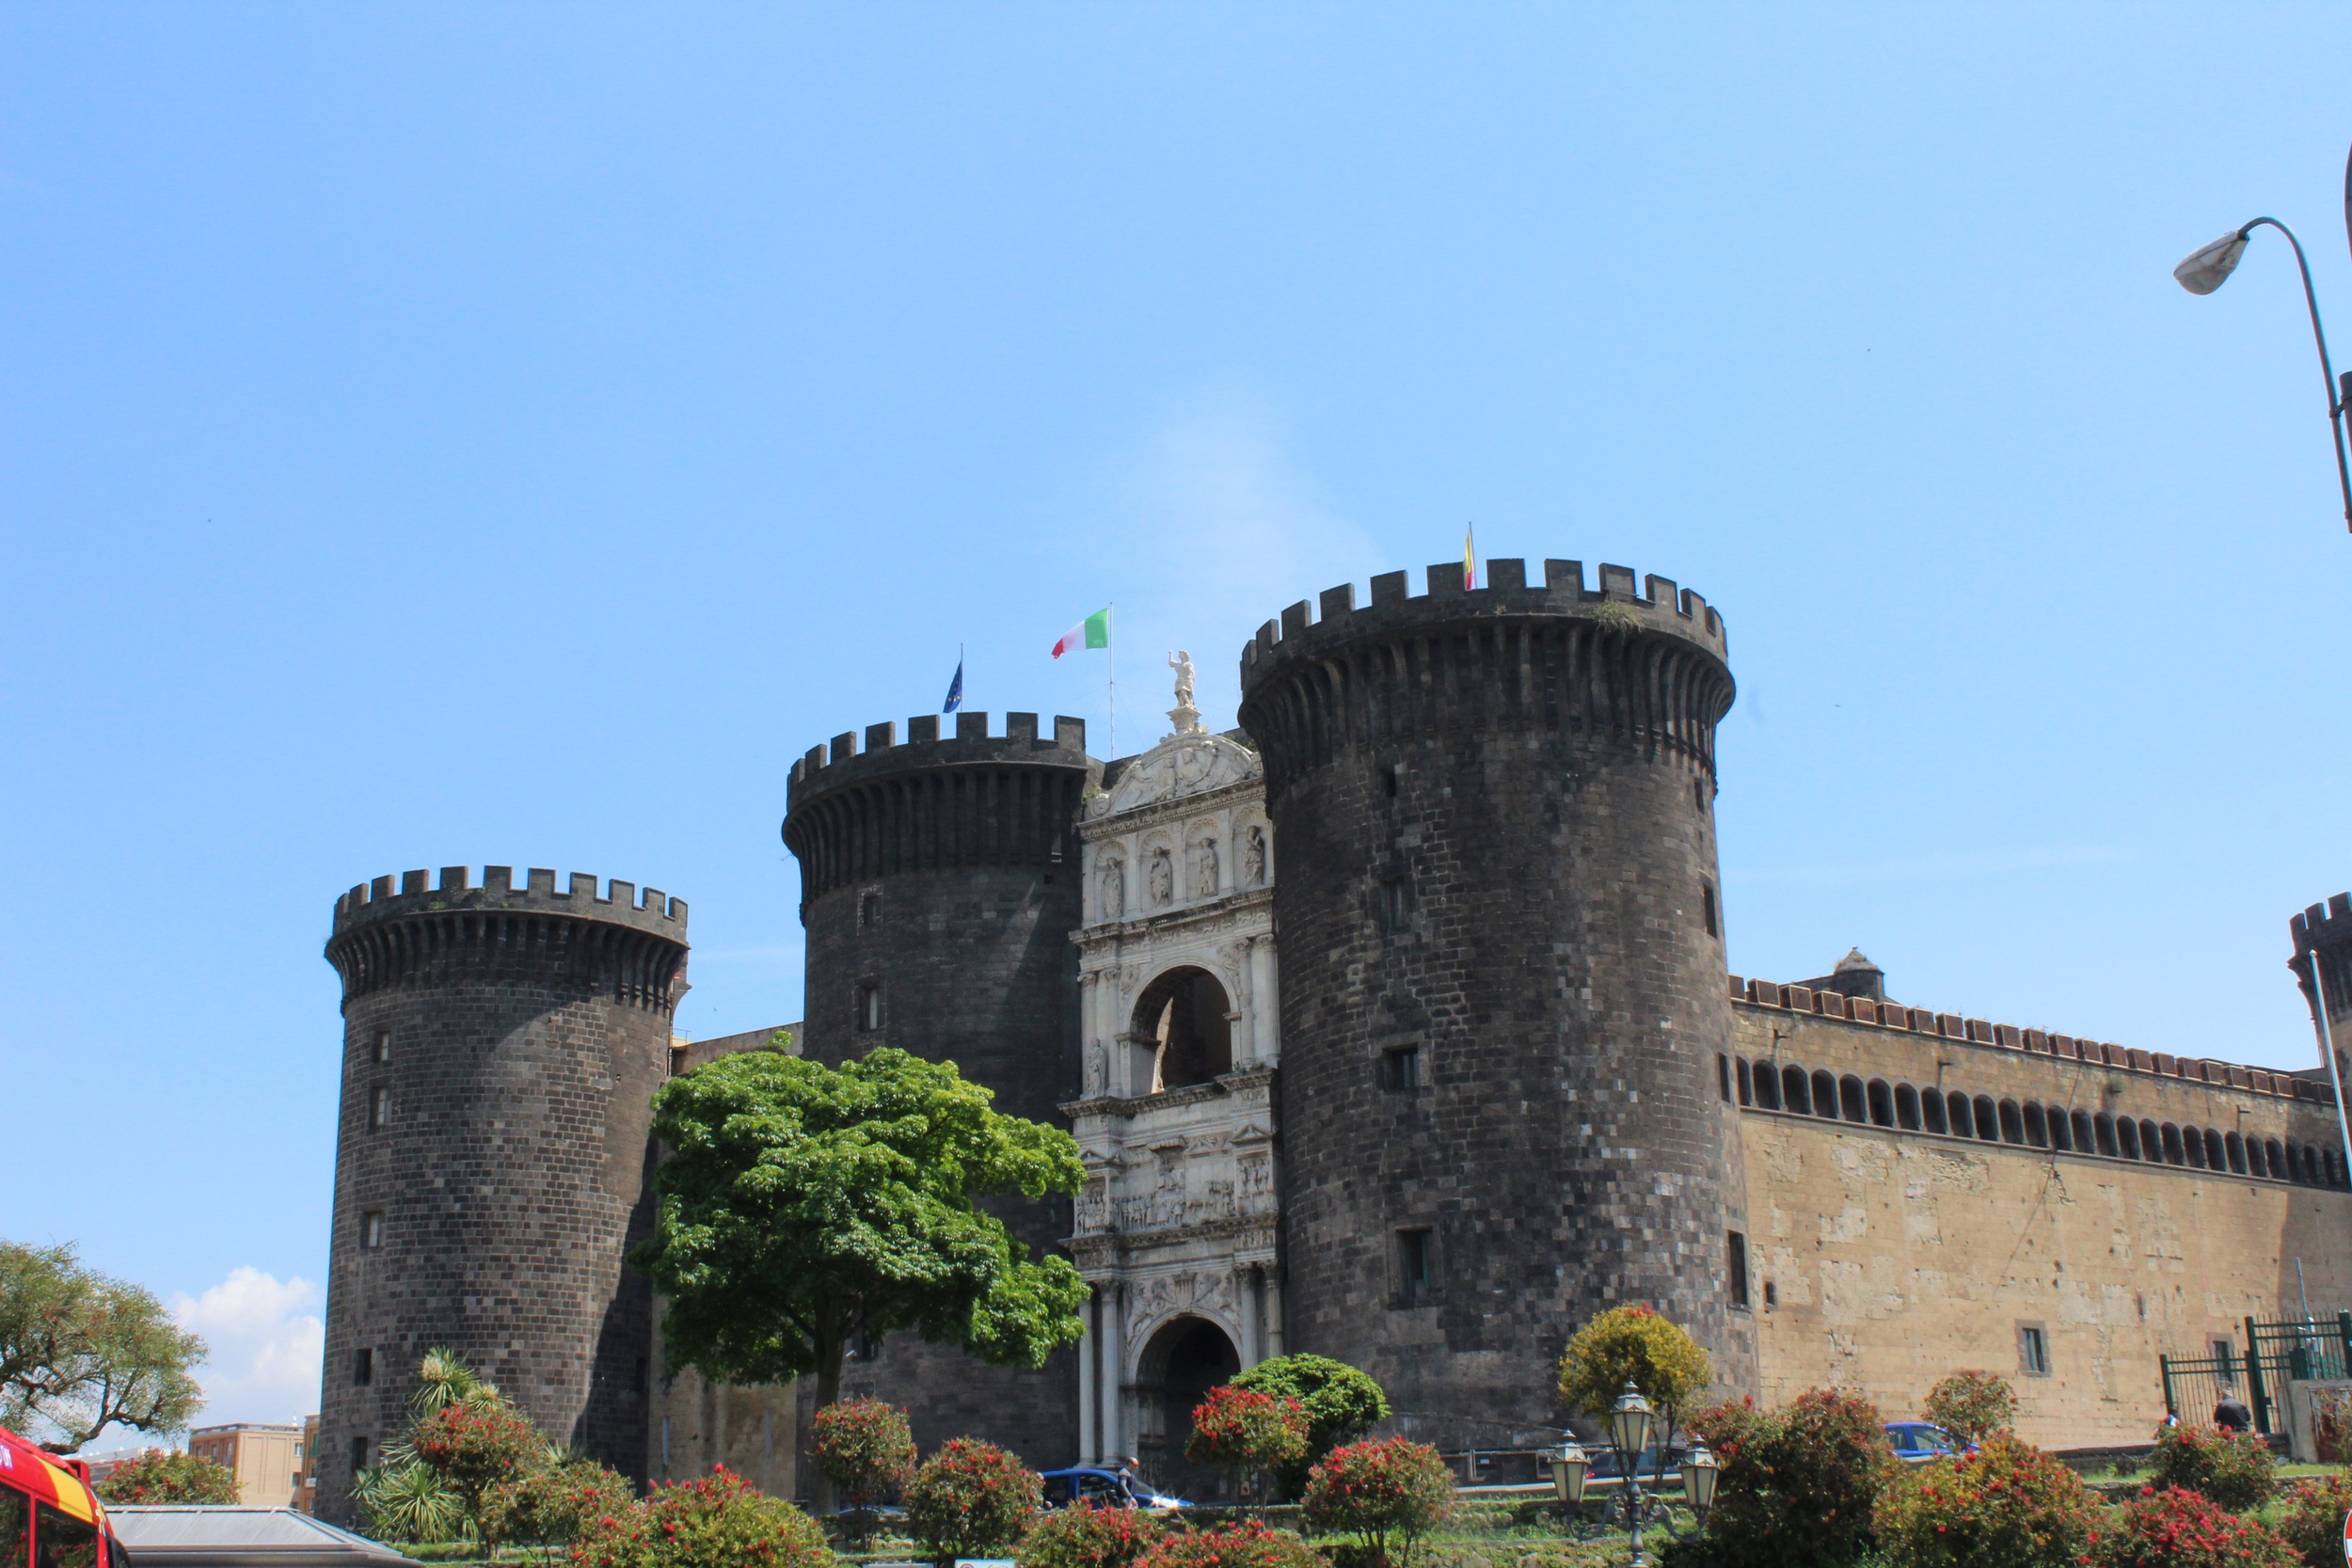 Castel Nuovo or Maschio Angoino